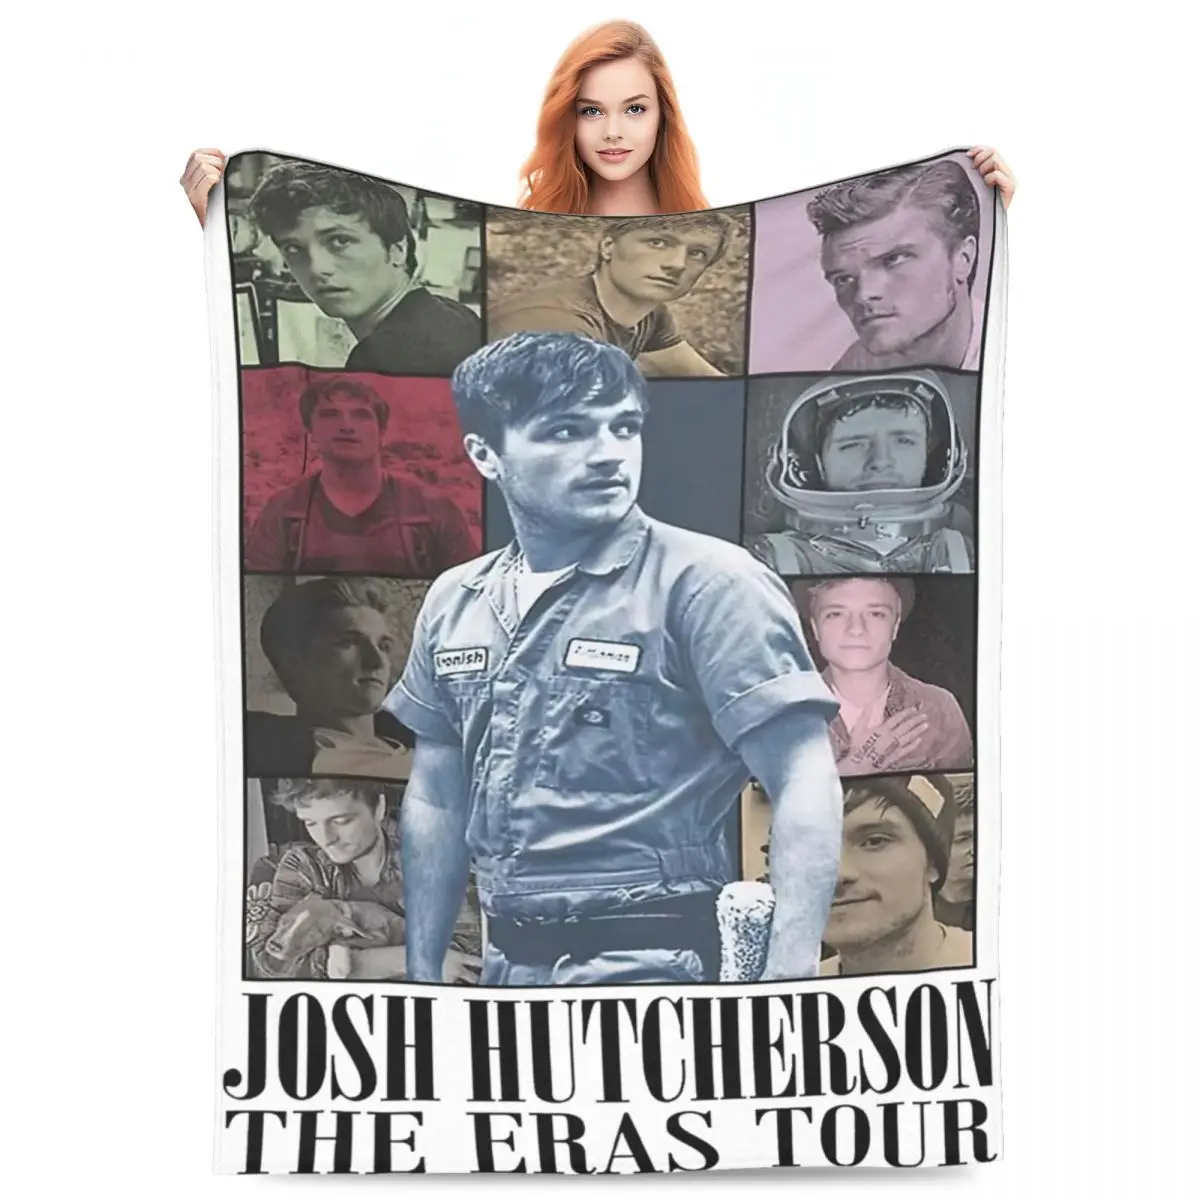 

Josh Hutcherson The Eras Tour Throw Blanket Fleece Sofa Vintage Throw Blankets Cozy Ultra-Soft for Travel Bedding Throws